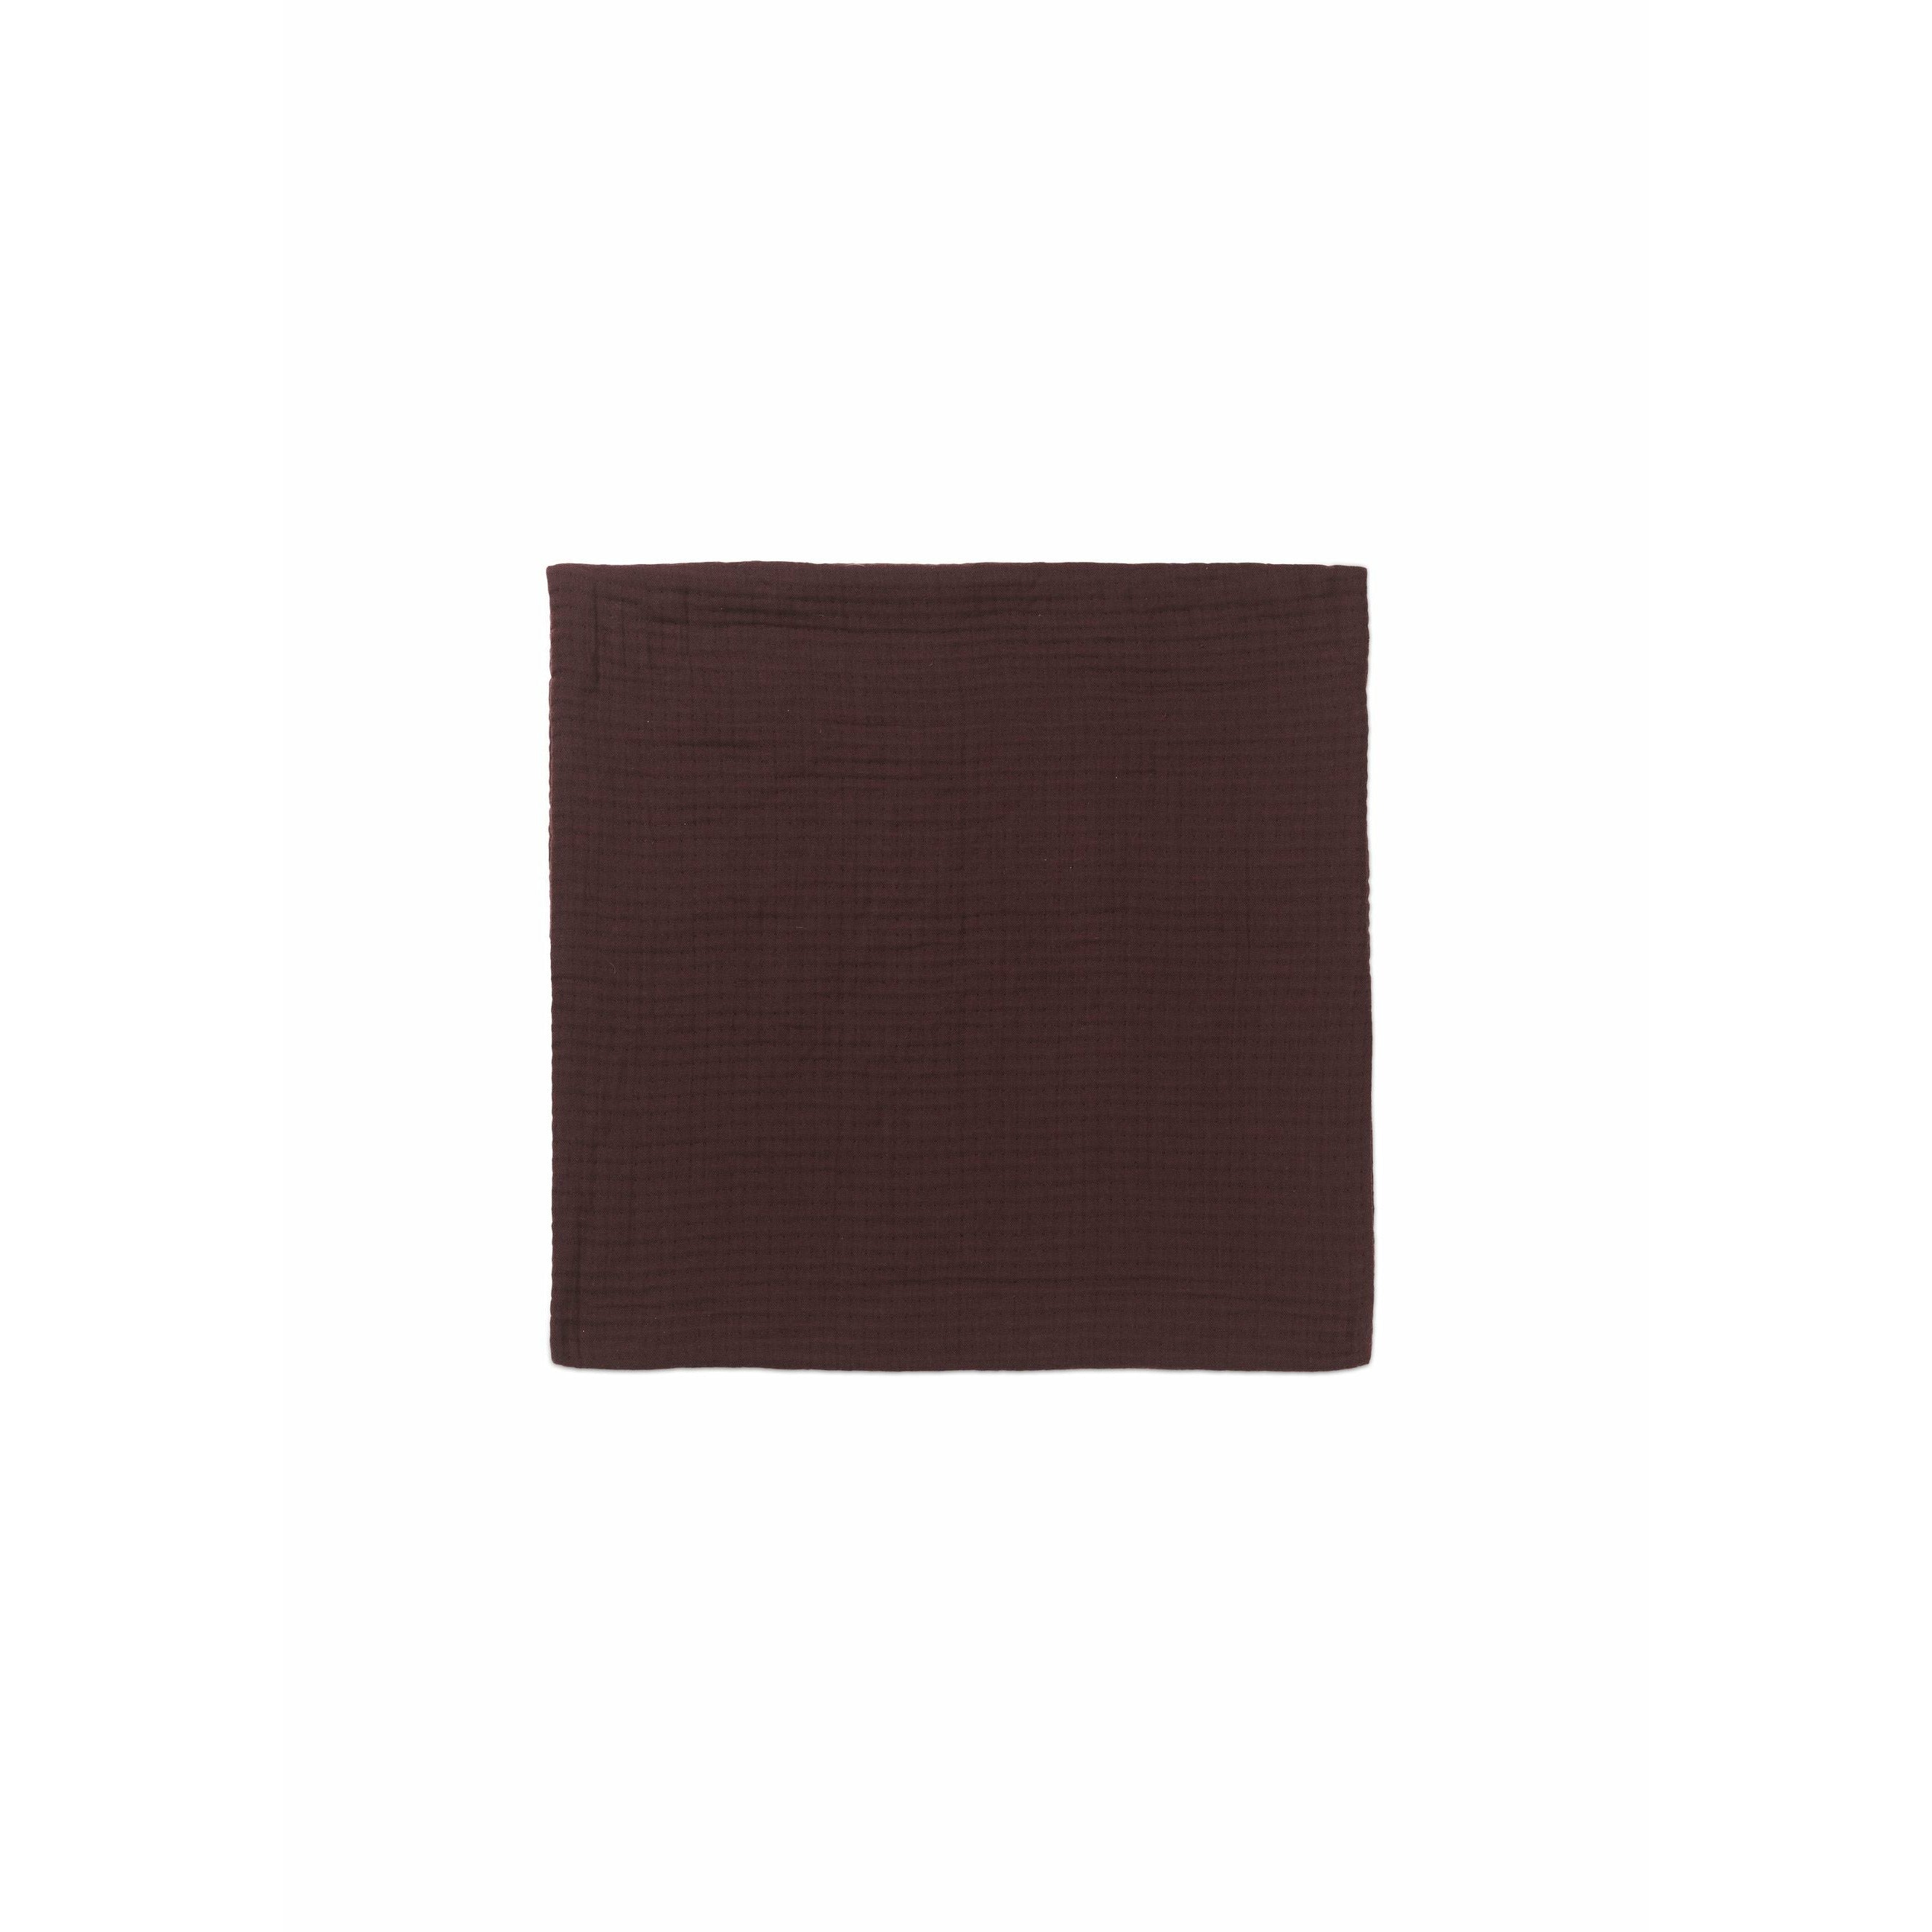 Juna View Cushion 45x45厘米，巧克力